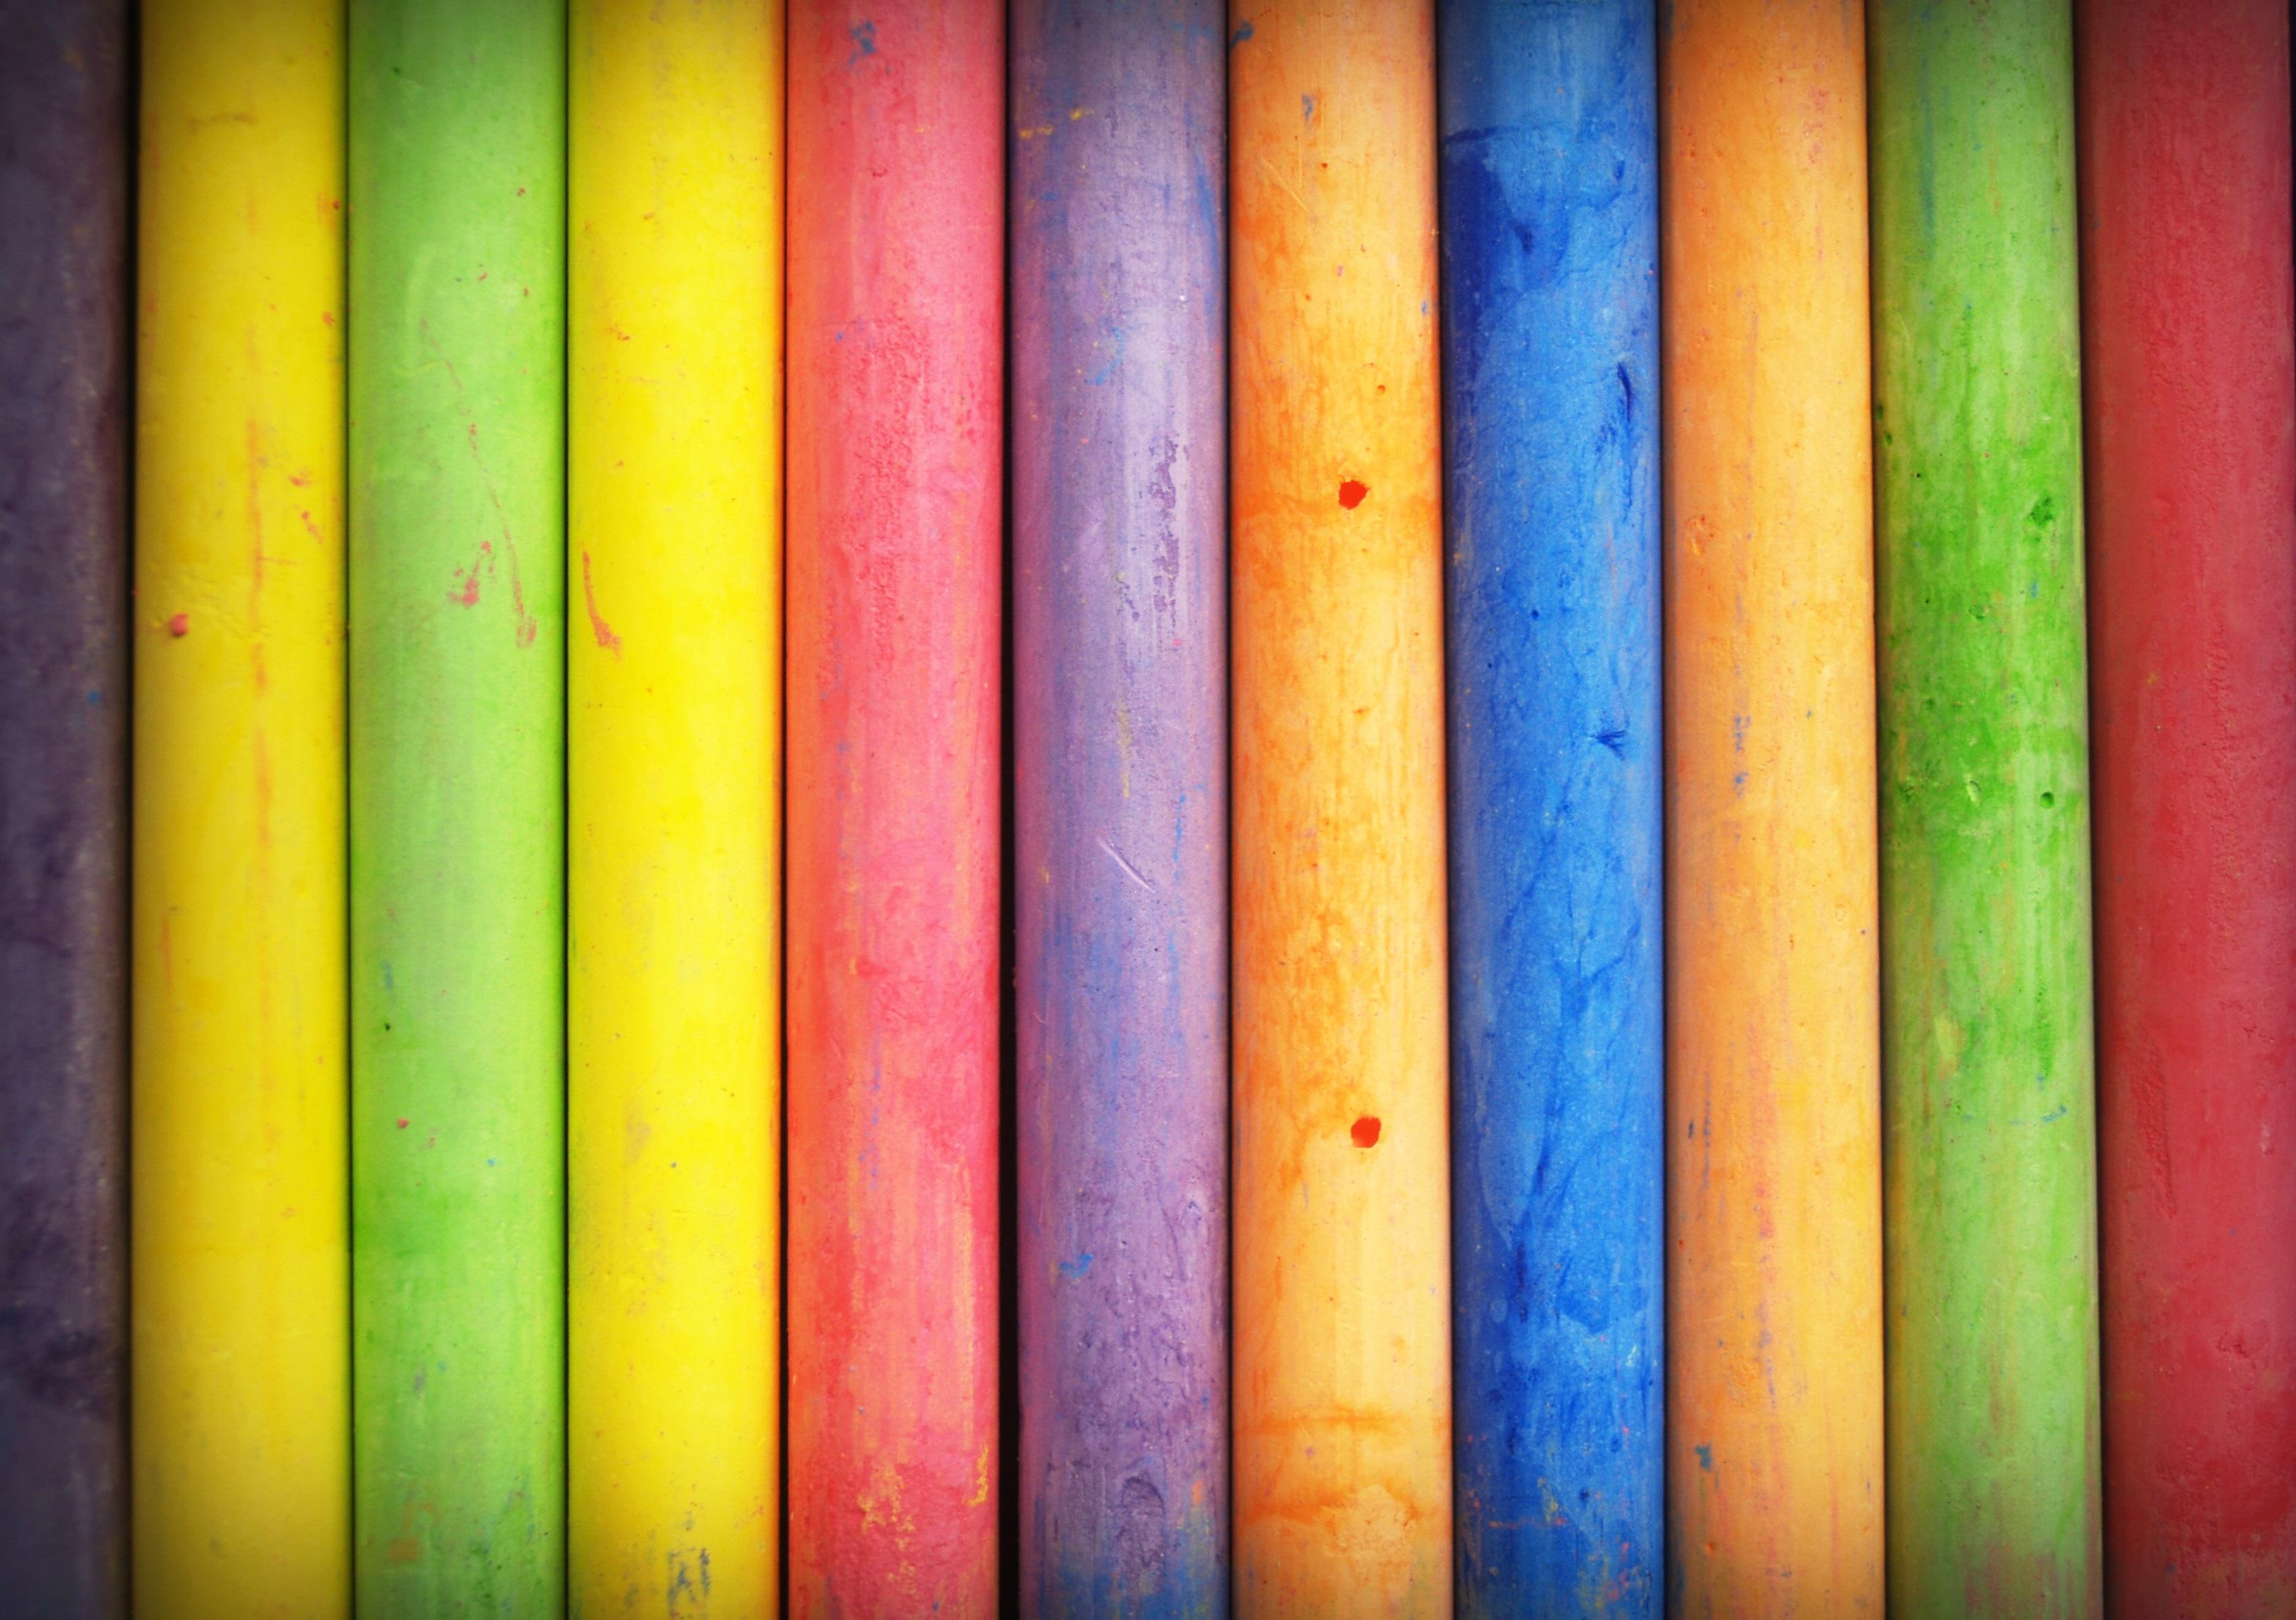 Renklerin insan psikolojisindeki etkisi